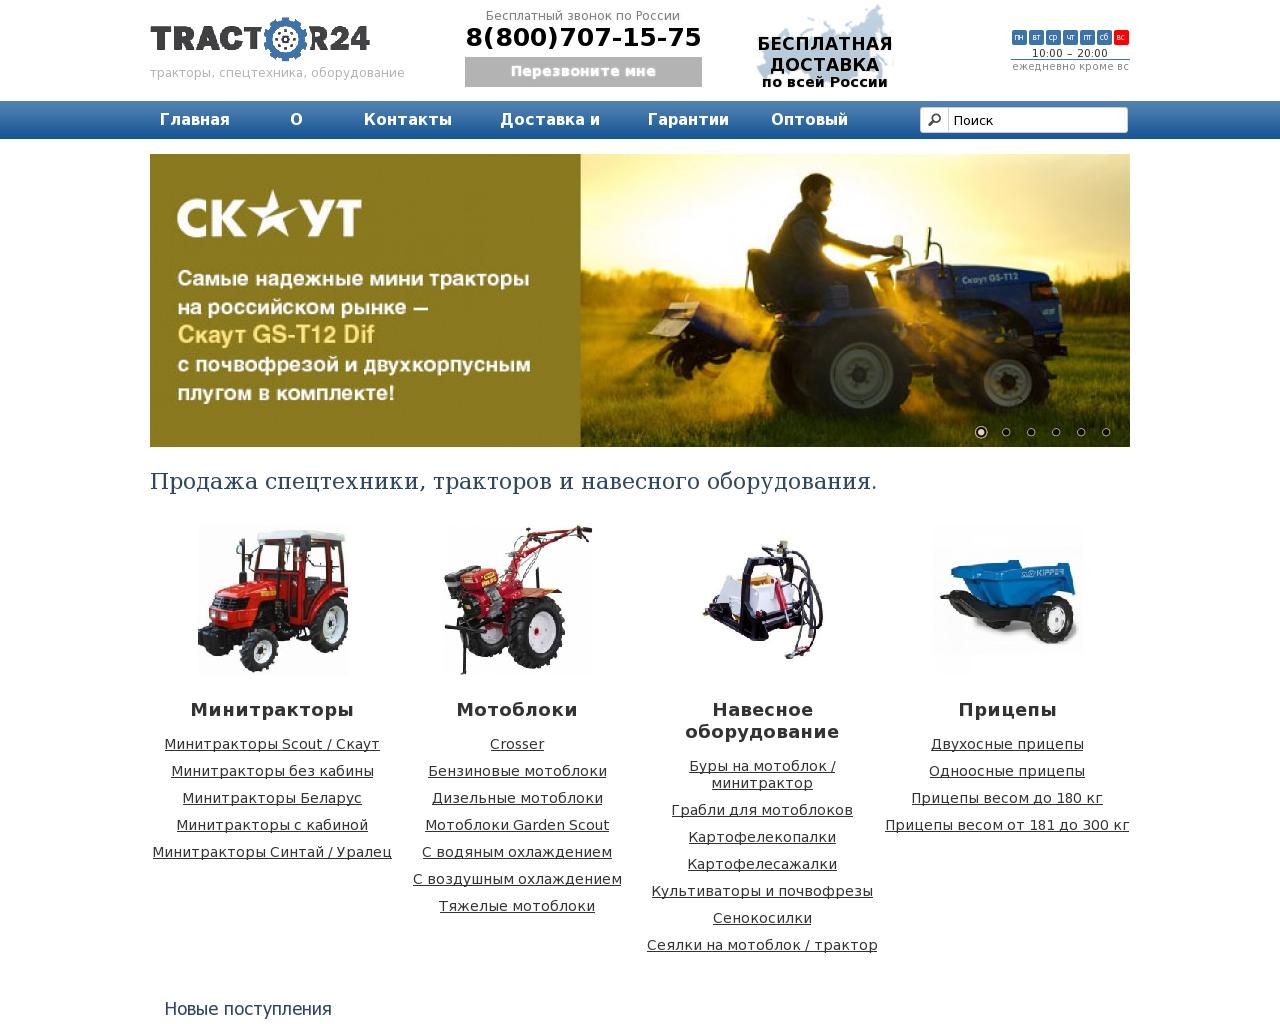 Изображение сайта tractor24.ru в разрешении 1280x1024